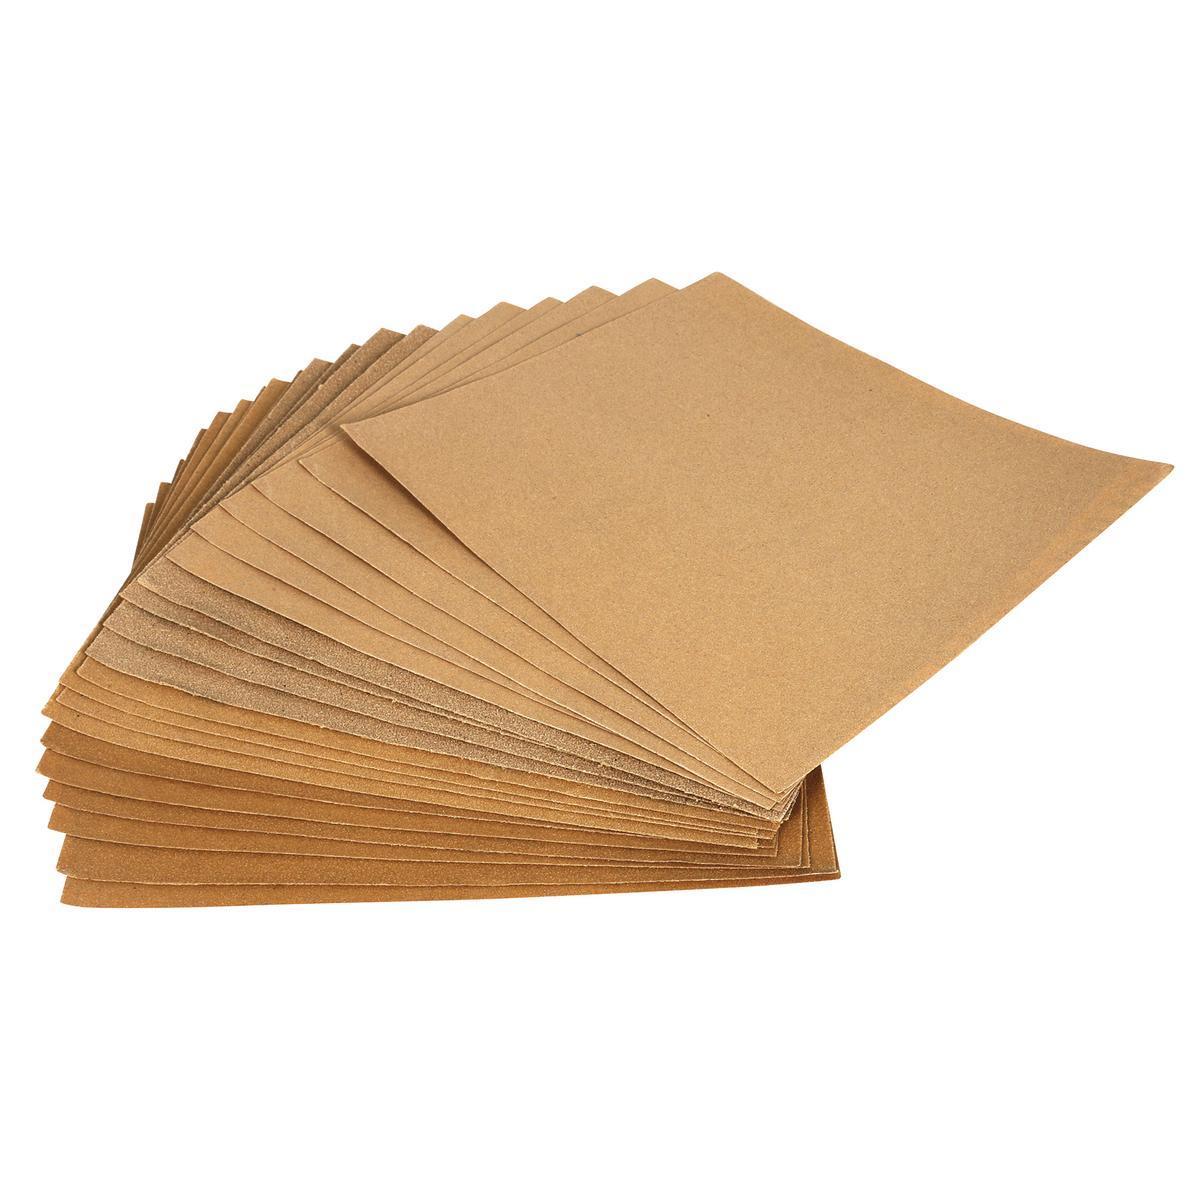 20 feuilles de Papier Abrasif - Différents gramages - 37 x 1.3 x 25 cm - Marron